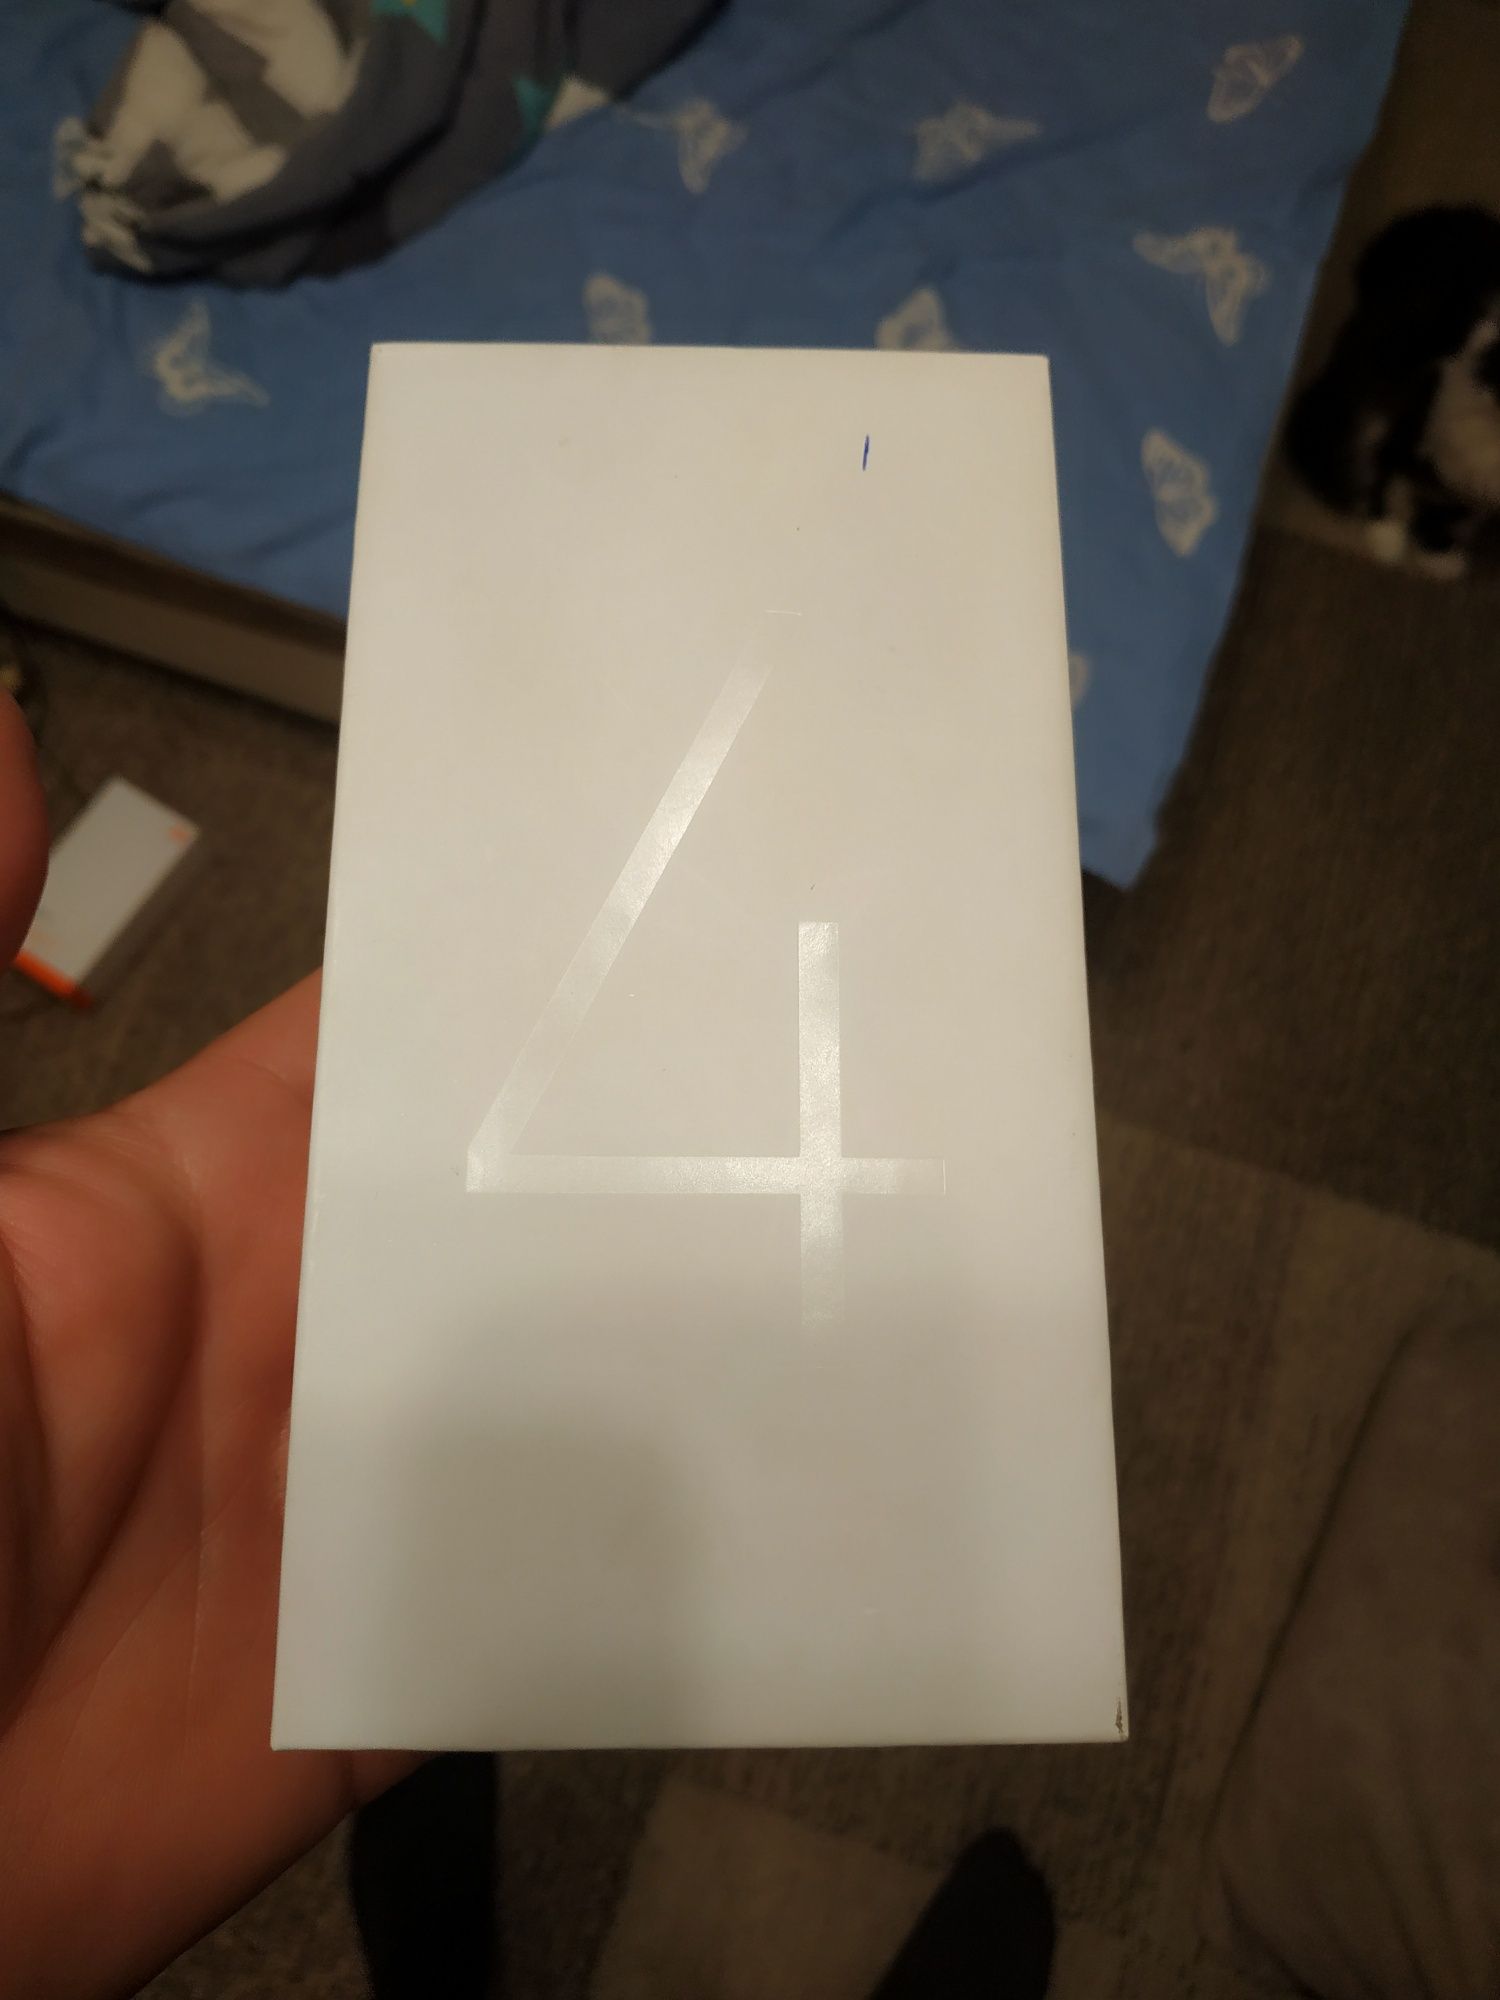 Xiaomi redmi 4 (3/32)